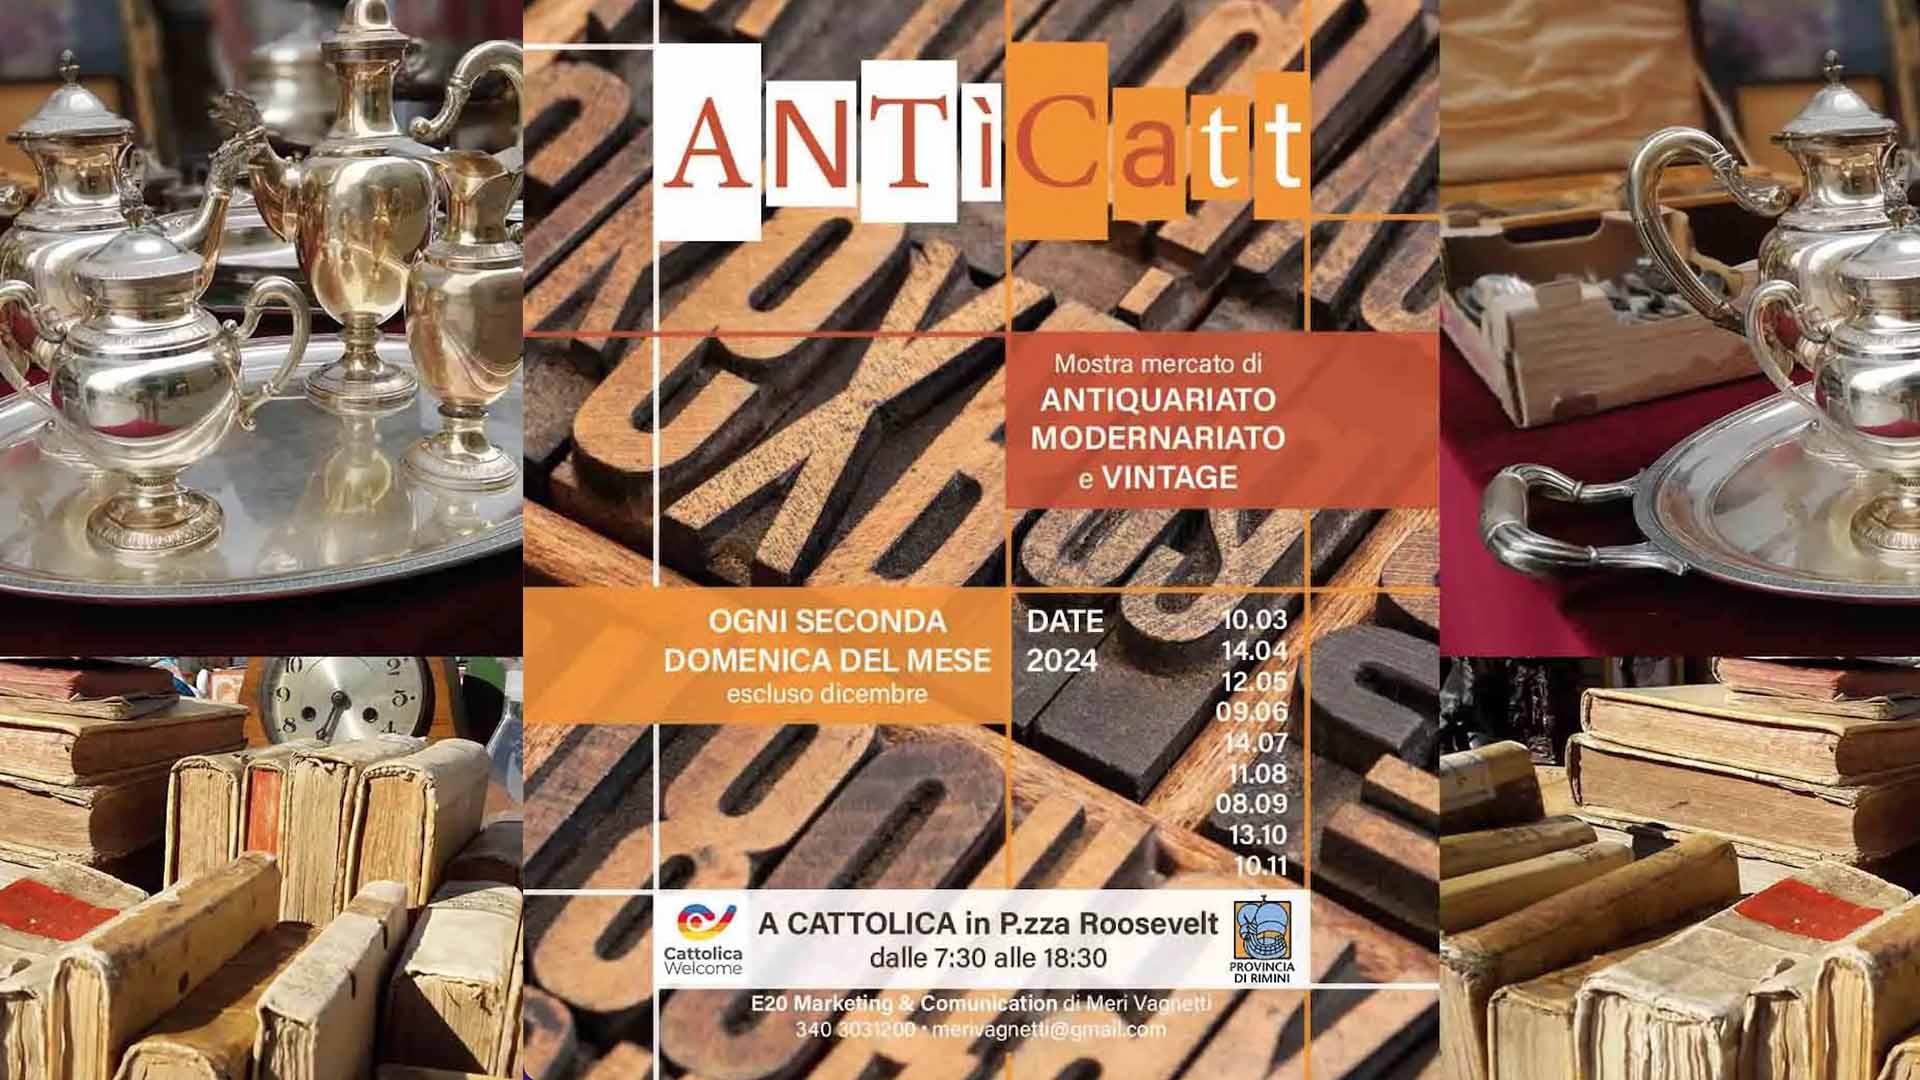 ANTICatt – 10 Novembre